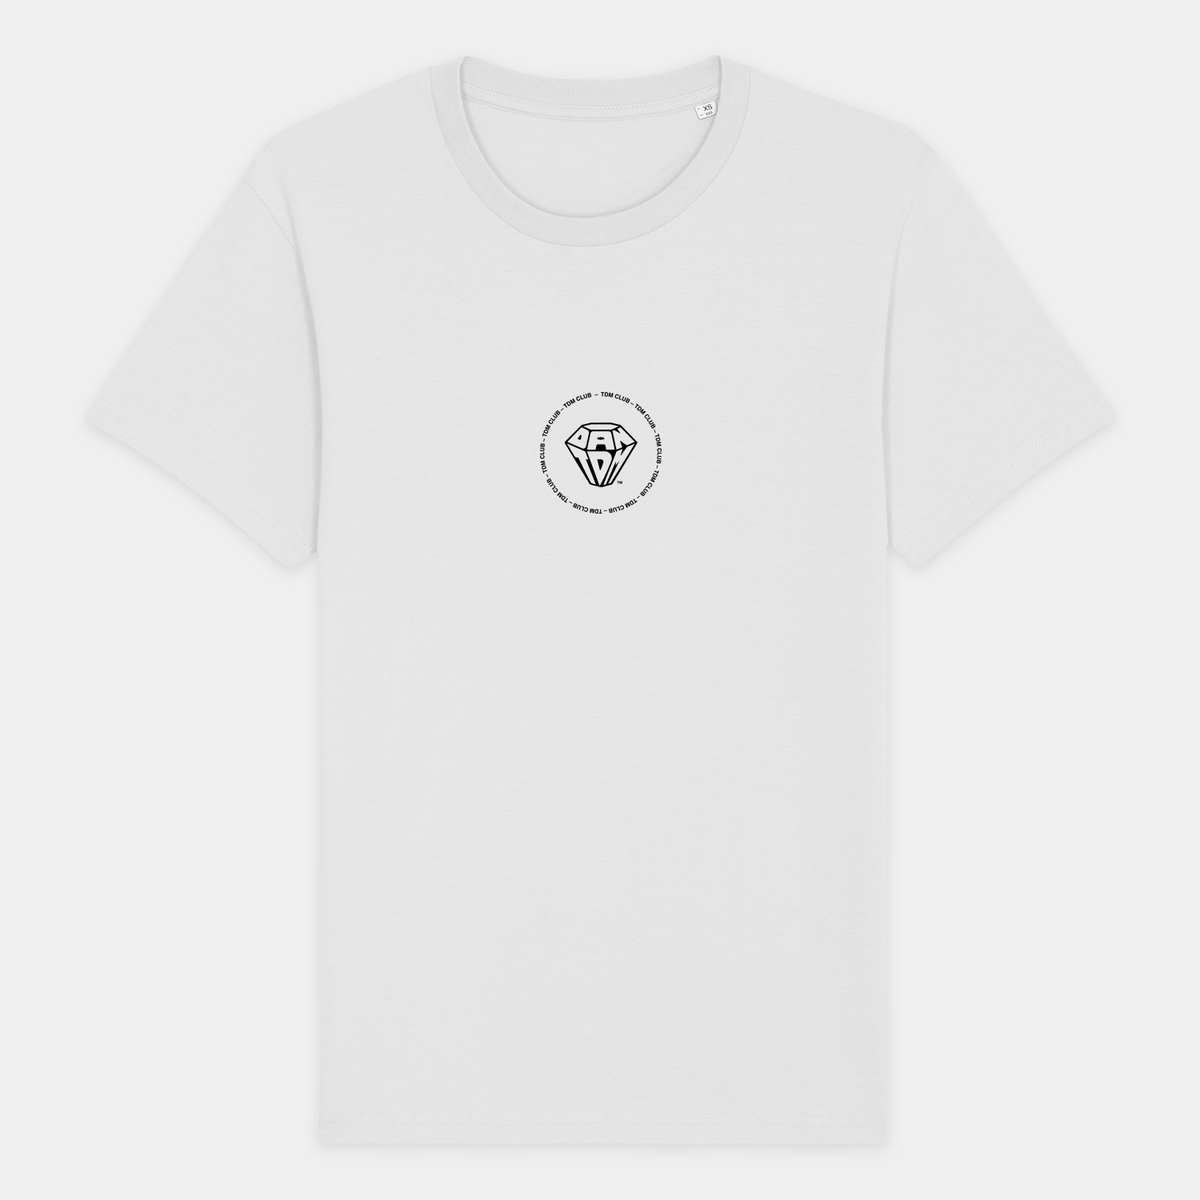 The Diamond Minecart White DanTDM T-Shirt